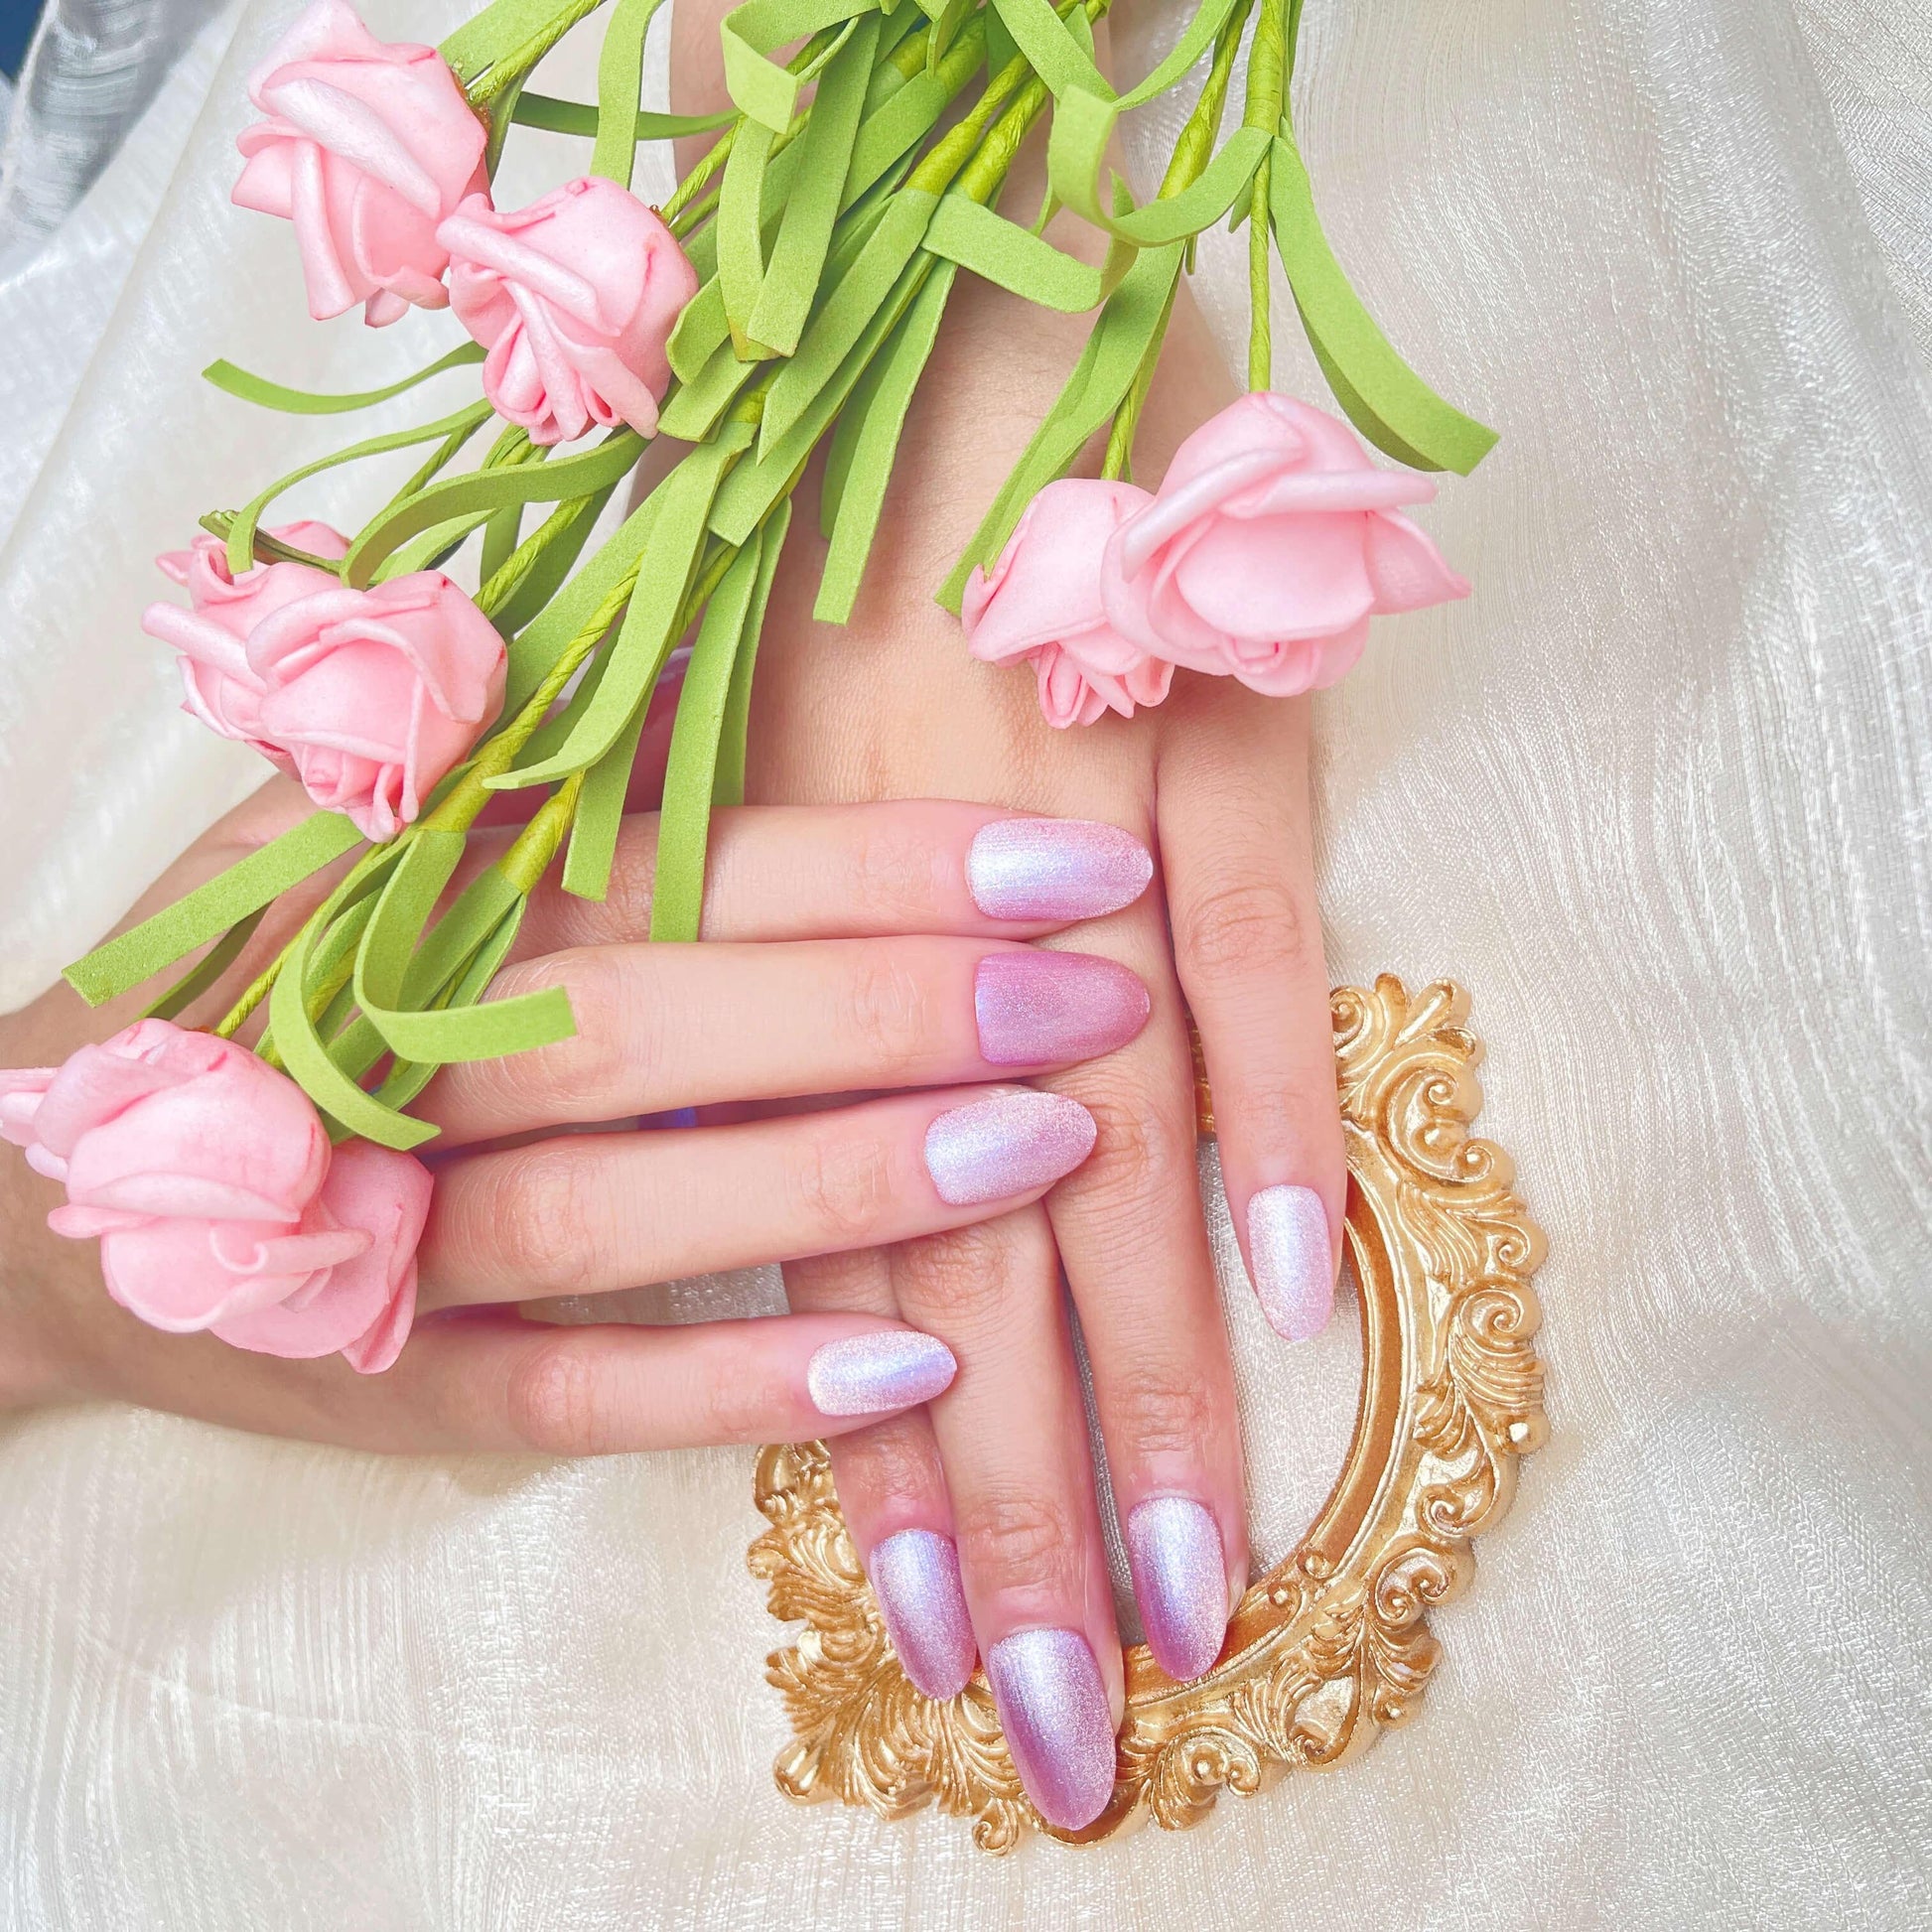 [FULL SET GLITTERING] Moonlight Glittering Lotus Pink Medium Length Press On Nails - Belle Rose Nails